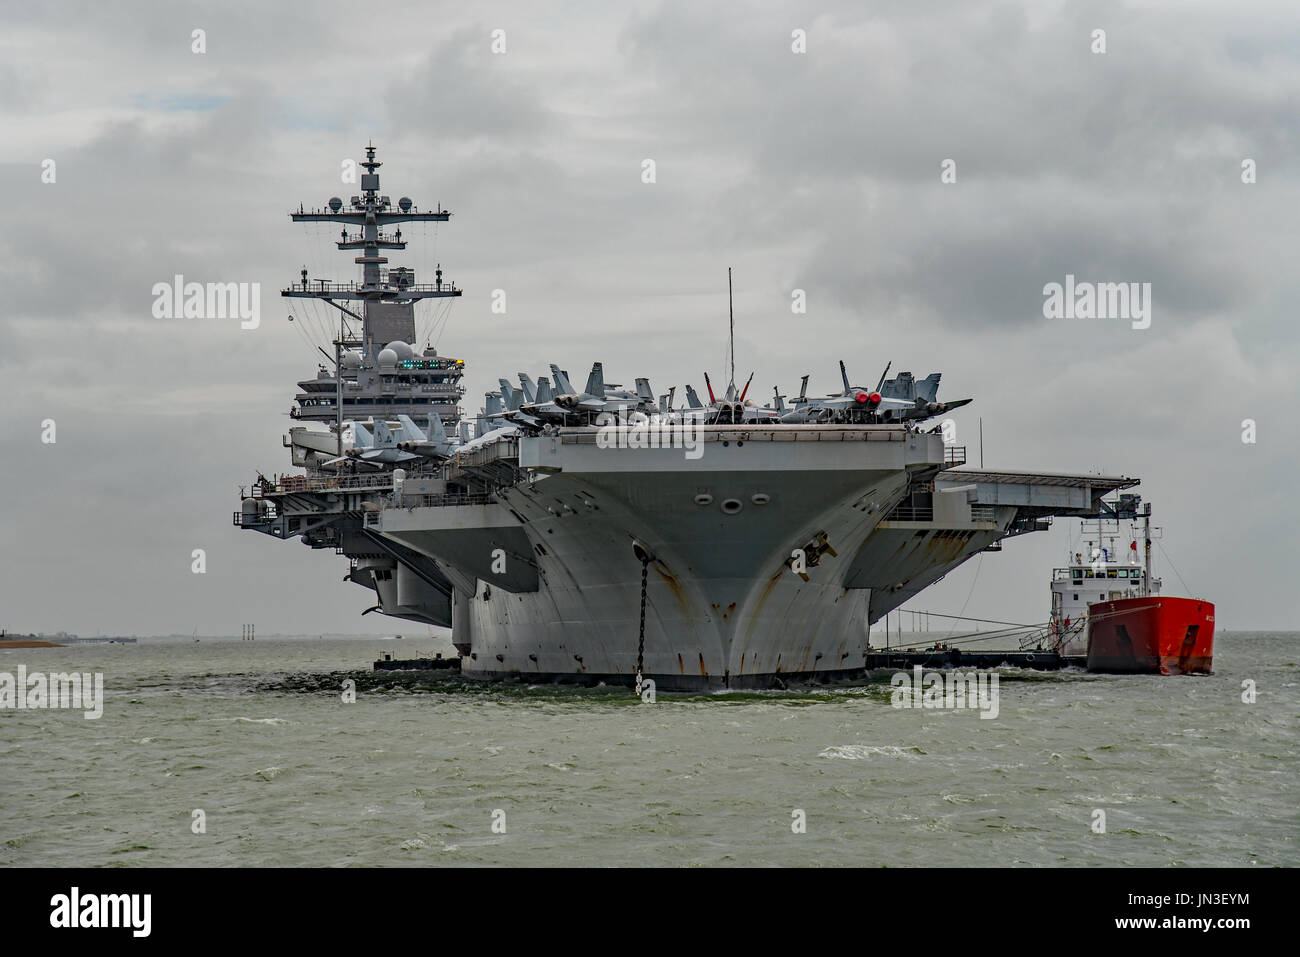 US Navy nuclear powered nave da guerra, la portaerei USS George H W Bush in occasione di una visita a Portsmouth, Regno Unito dalla Marina degli Stati Uniti del 28/7/17. Foto Stock